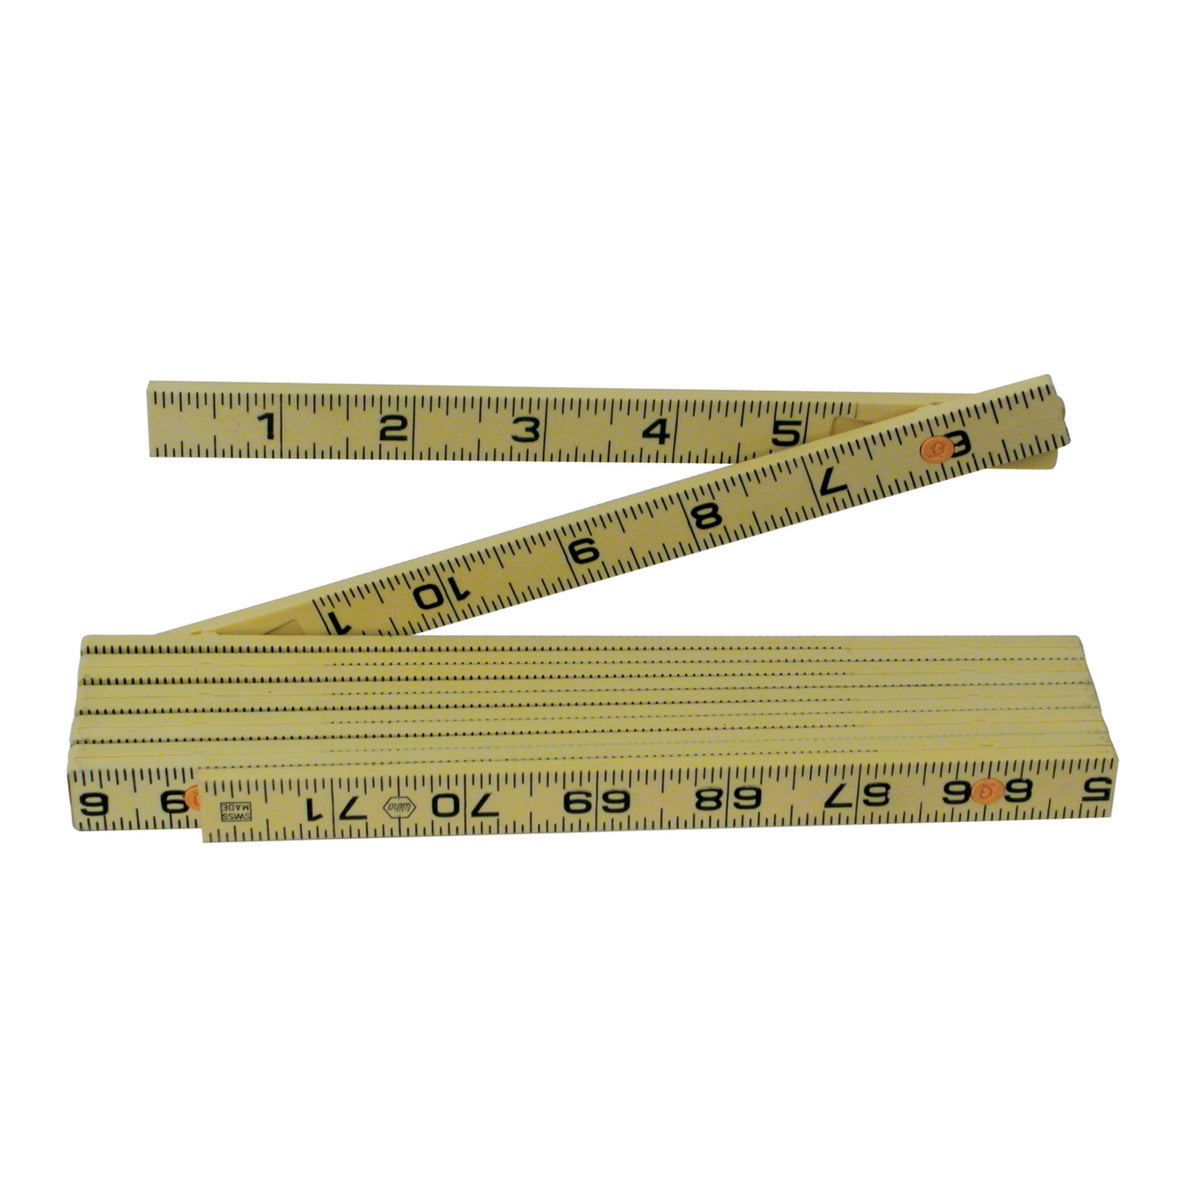 25 Foot DualMax Tape Measure